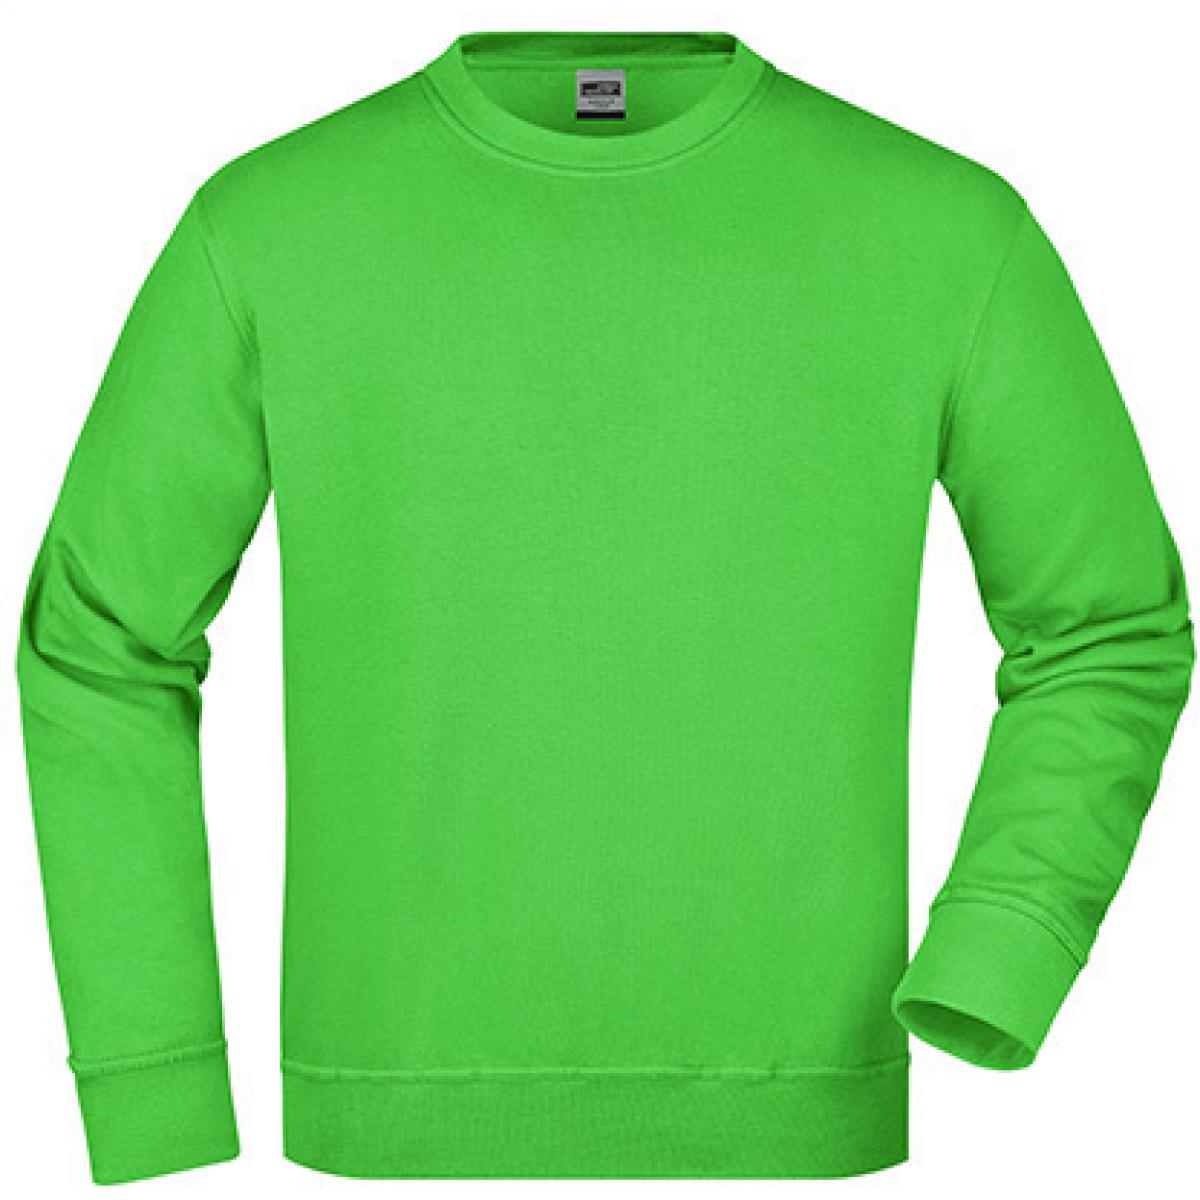 Hersteller: James+Nicholson Herstellernummer: JN840 Artikelbezeichnung: Workwear Sweatshirt / Waschbar bis 60C Farbe: Lime Green